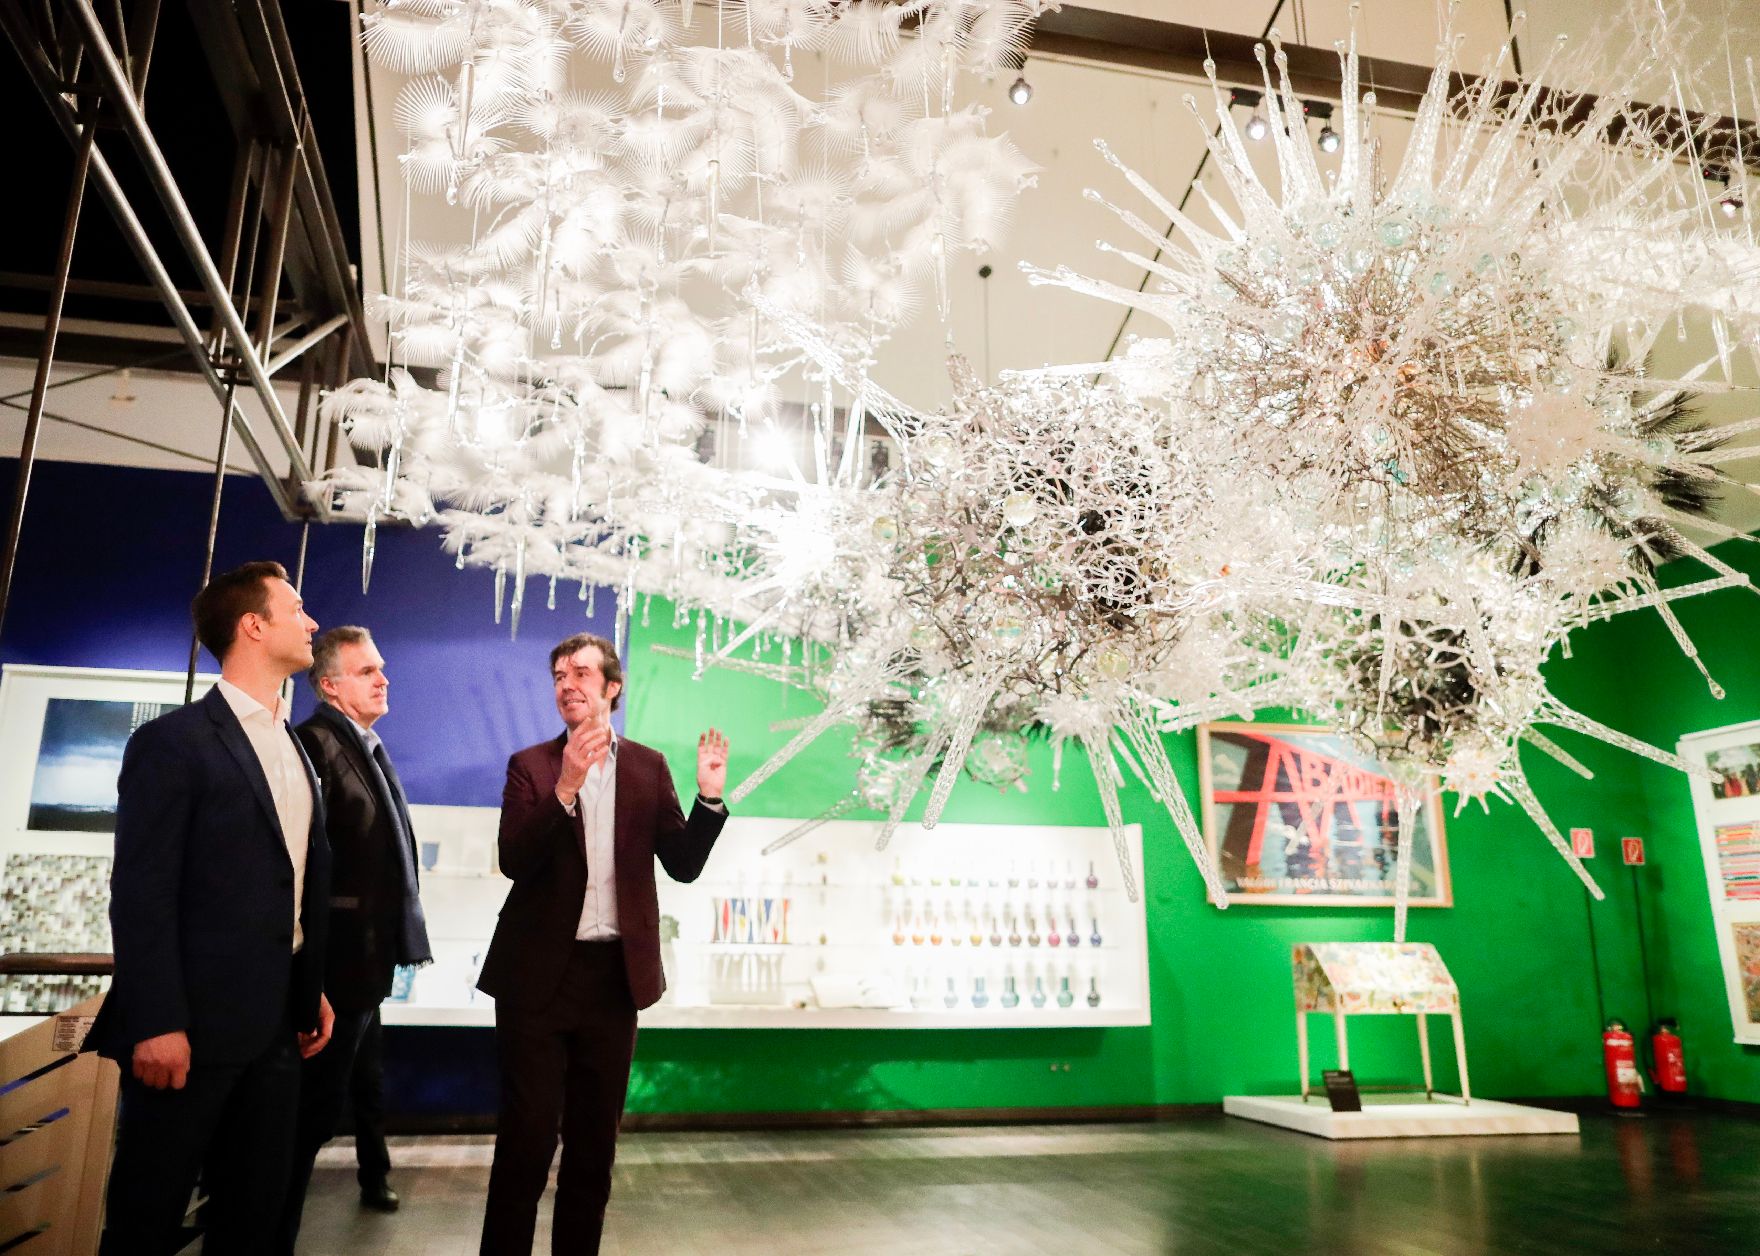 Am 23. Oktober 2018 nahm Bundesminister Gernot Blümel (l.) an der Ausstellungseröffnung "SAGMEISTER & WALSH: Beauty" im Museum für angewandte Kunst teil. Im Bild mit Grafikdesigner Stefan Sagmeister (r.).